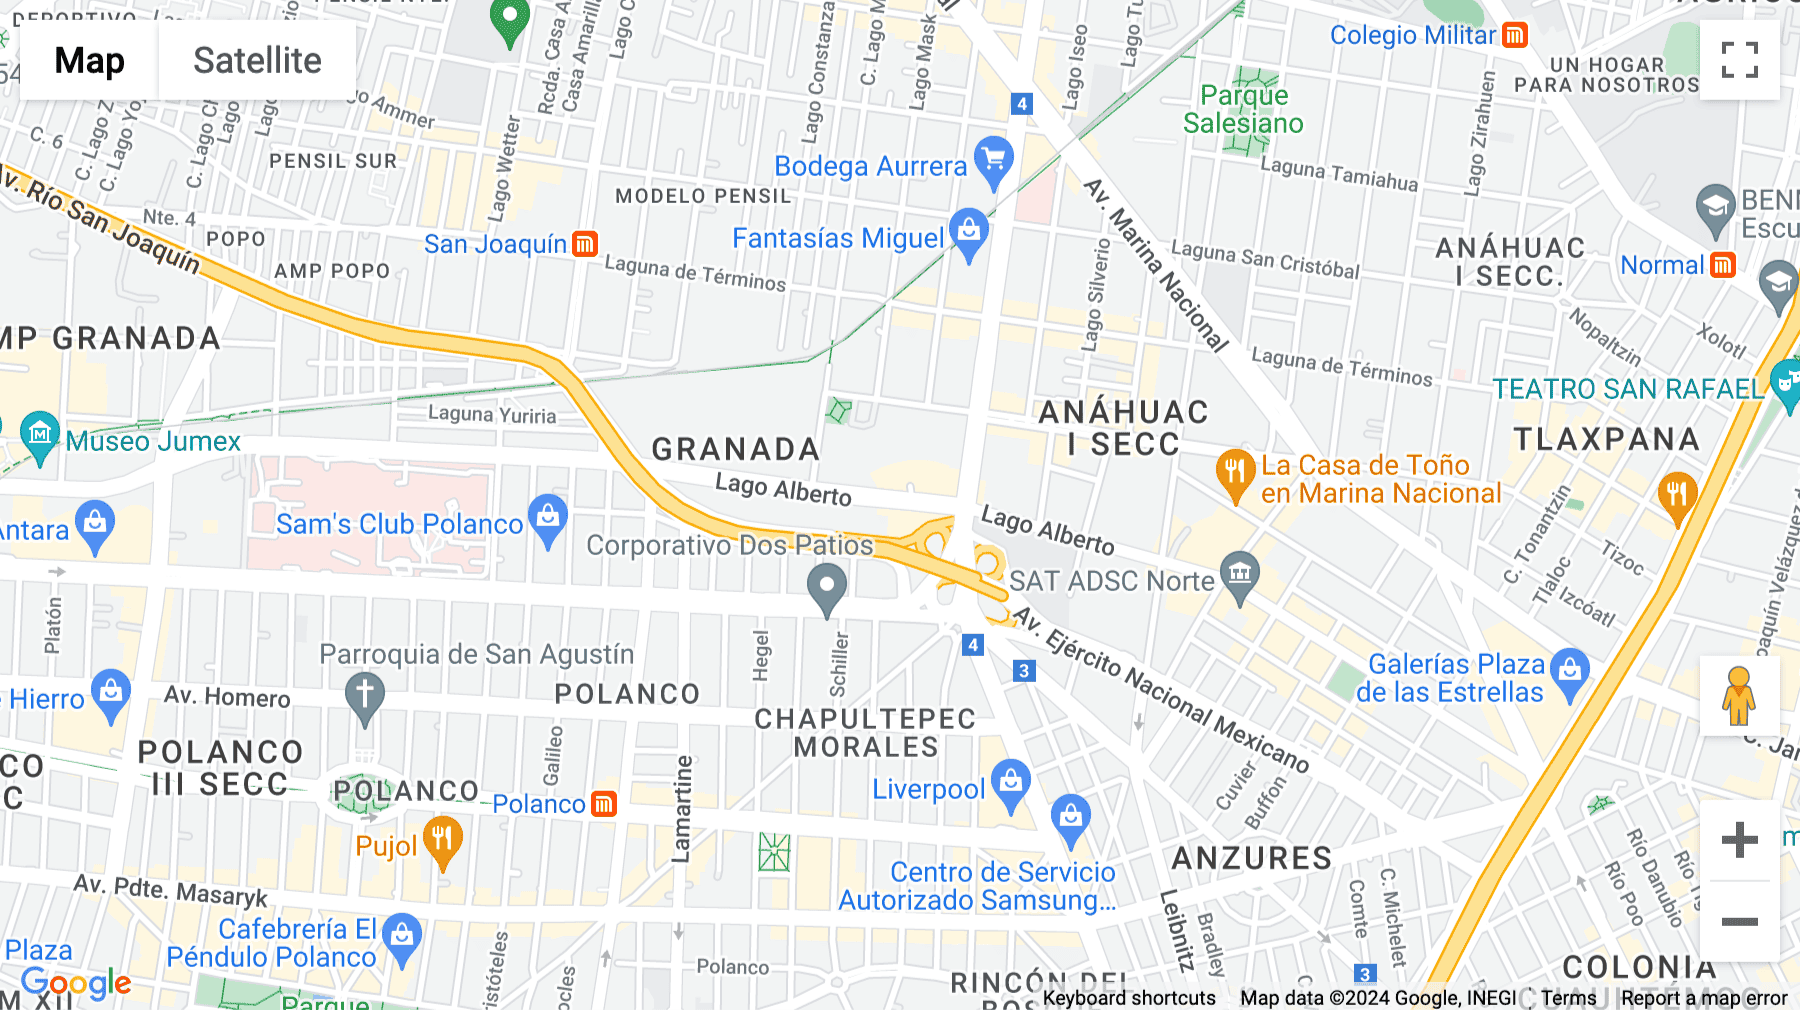 Click for interative map of Calle Lago Alberto No.319, Col. Granada, Del. Miguel Hidalgo, Mexico City